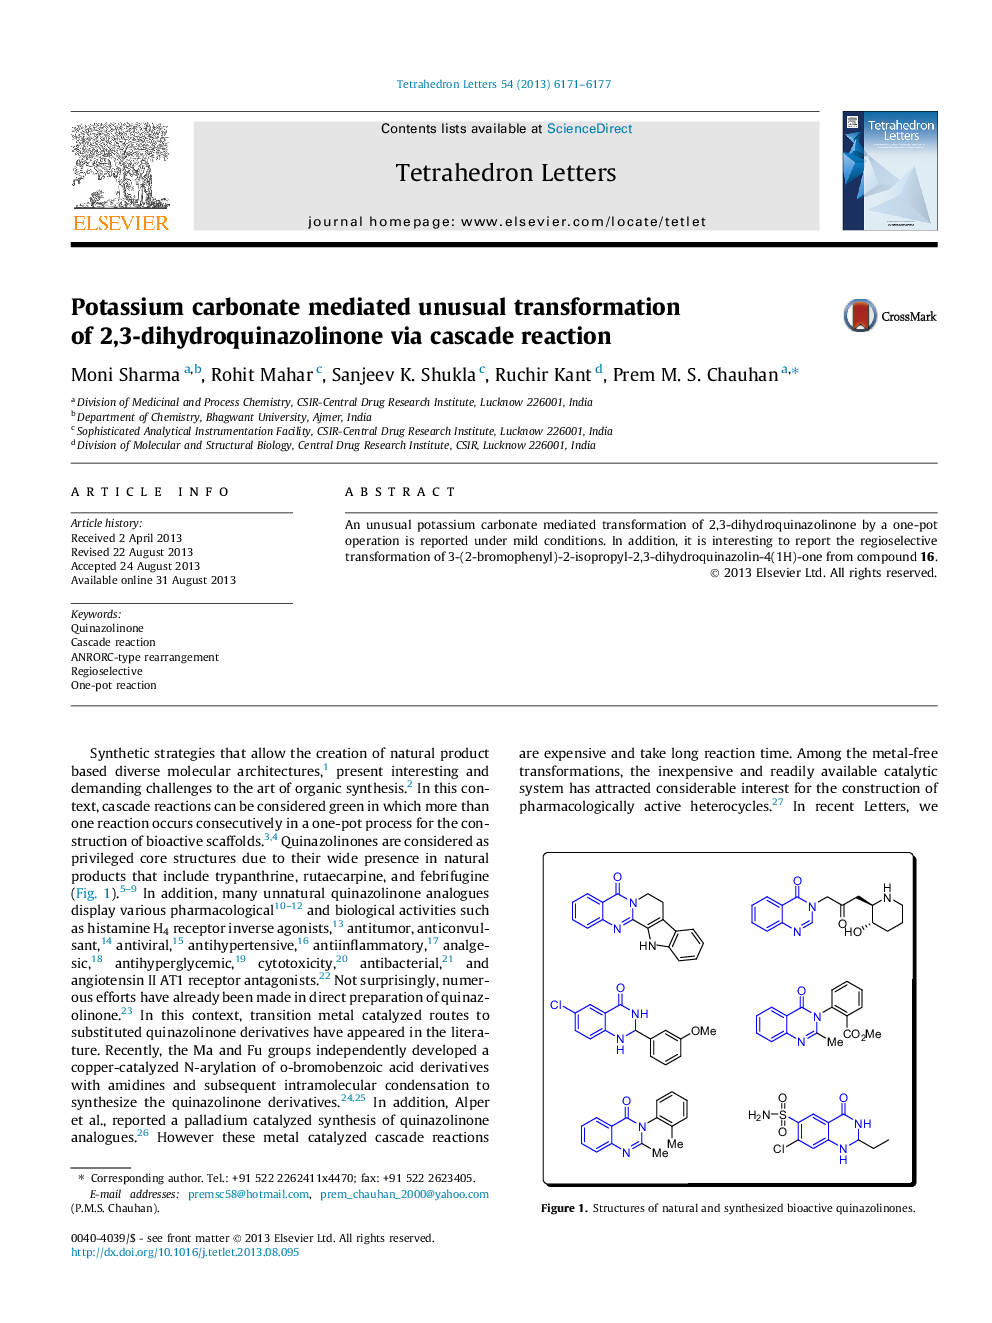 کربنات پتاسیم واسطه تغییر غیرمعمول 2،3-دی هیدروکینازولینون از طریق واکنش آبشار 